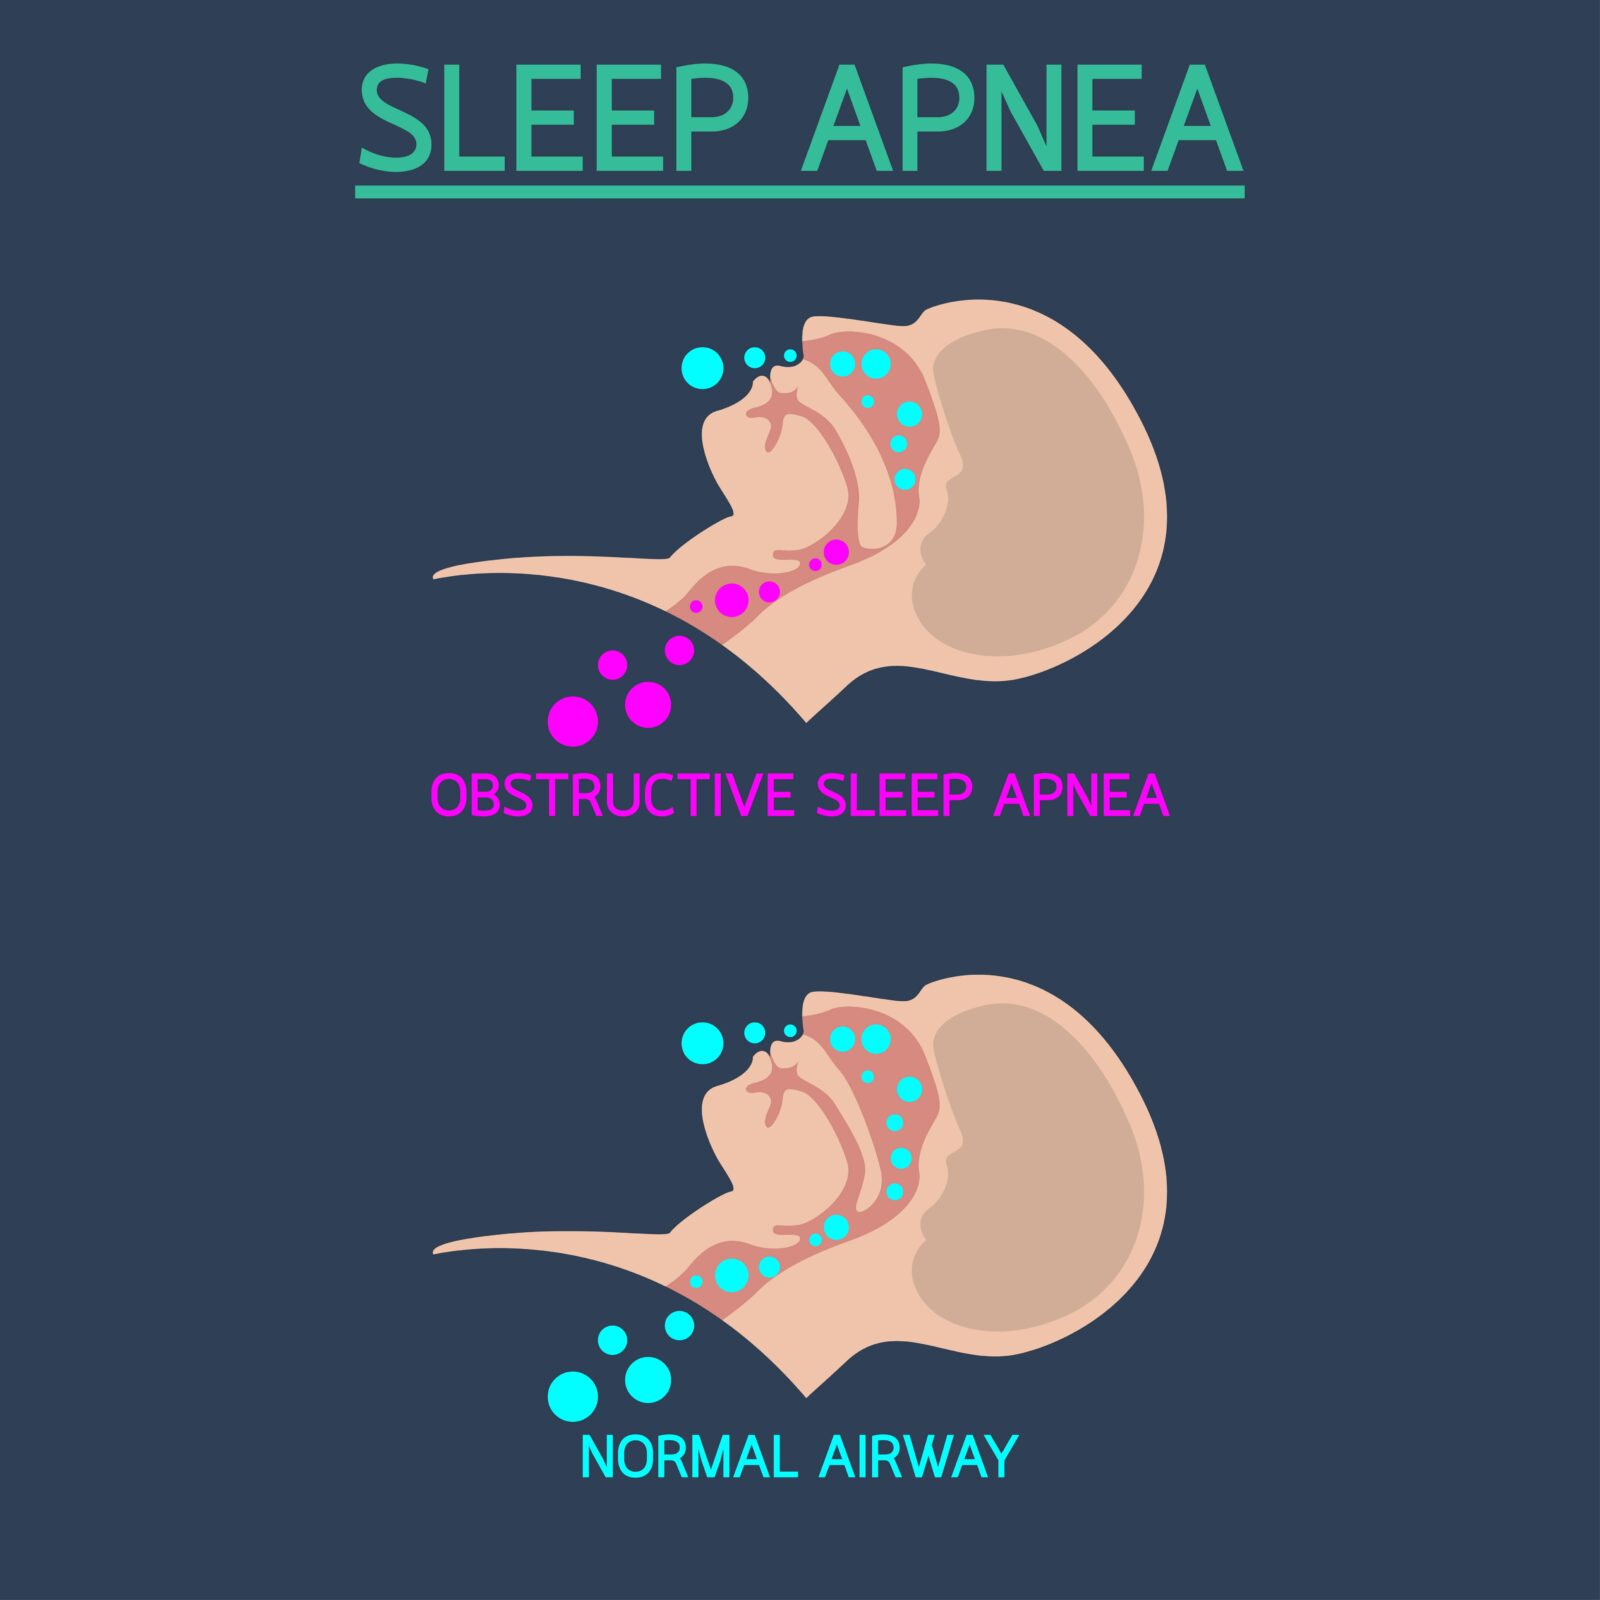 sleep apnea vs. normal airway